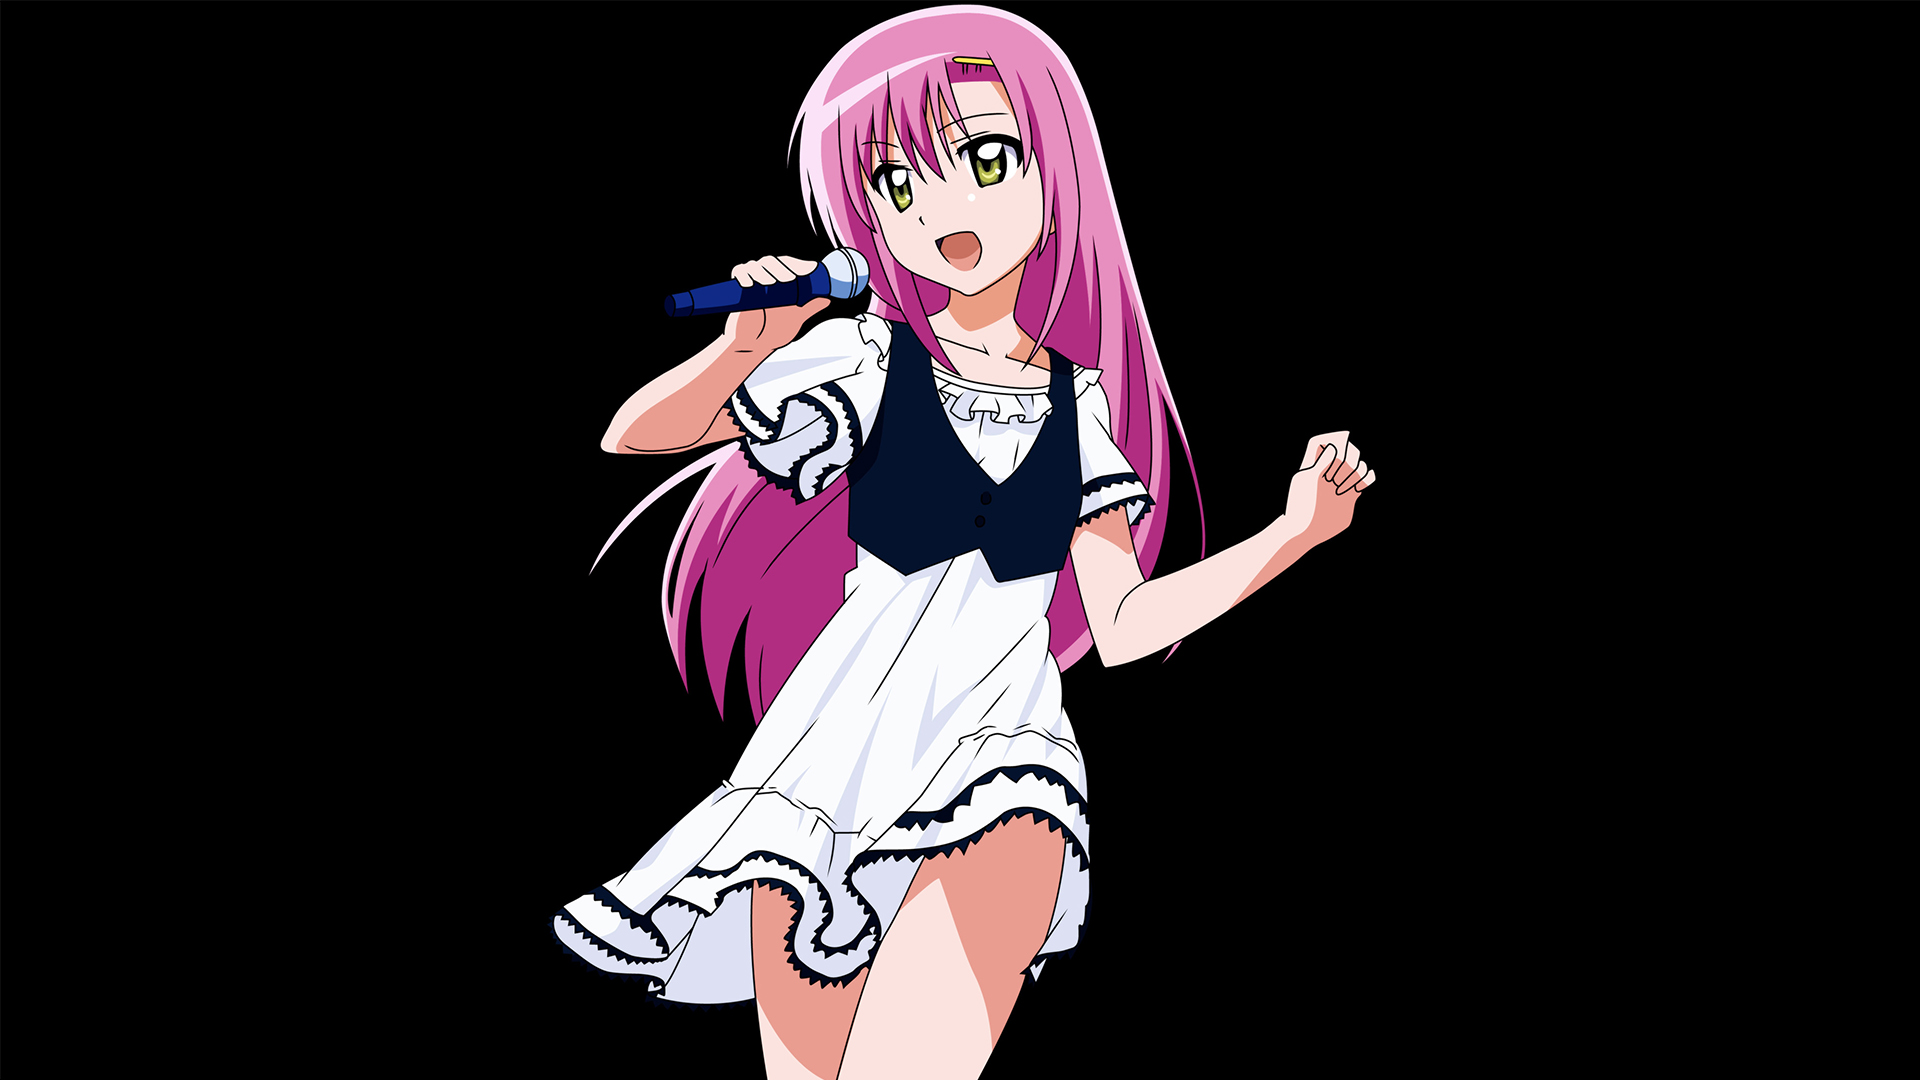 Anime 1920x1080 pink hair anime Hayate no Gotoku anime girls Katsura Hinagiku simple background black background long hair green eyes microphone singer standing open mouth